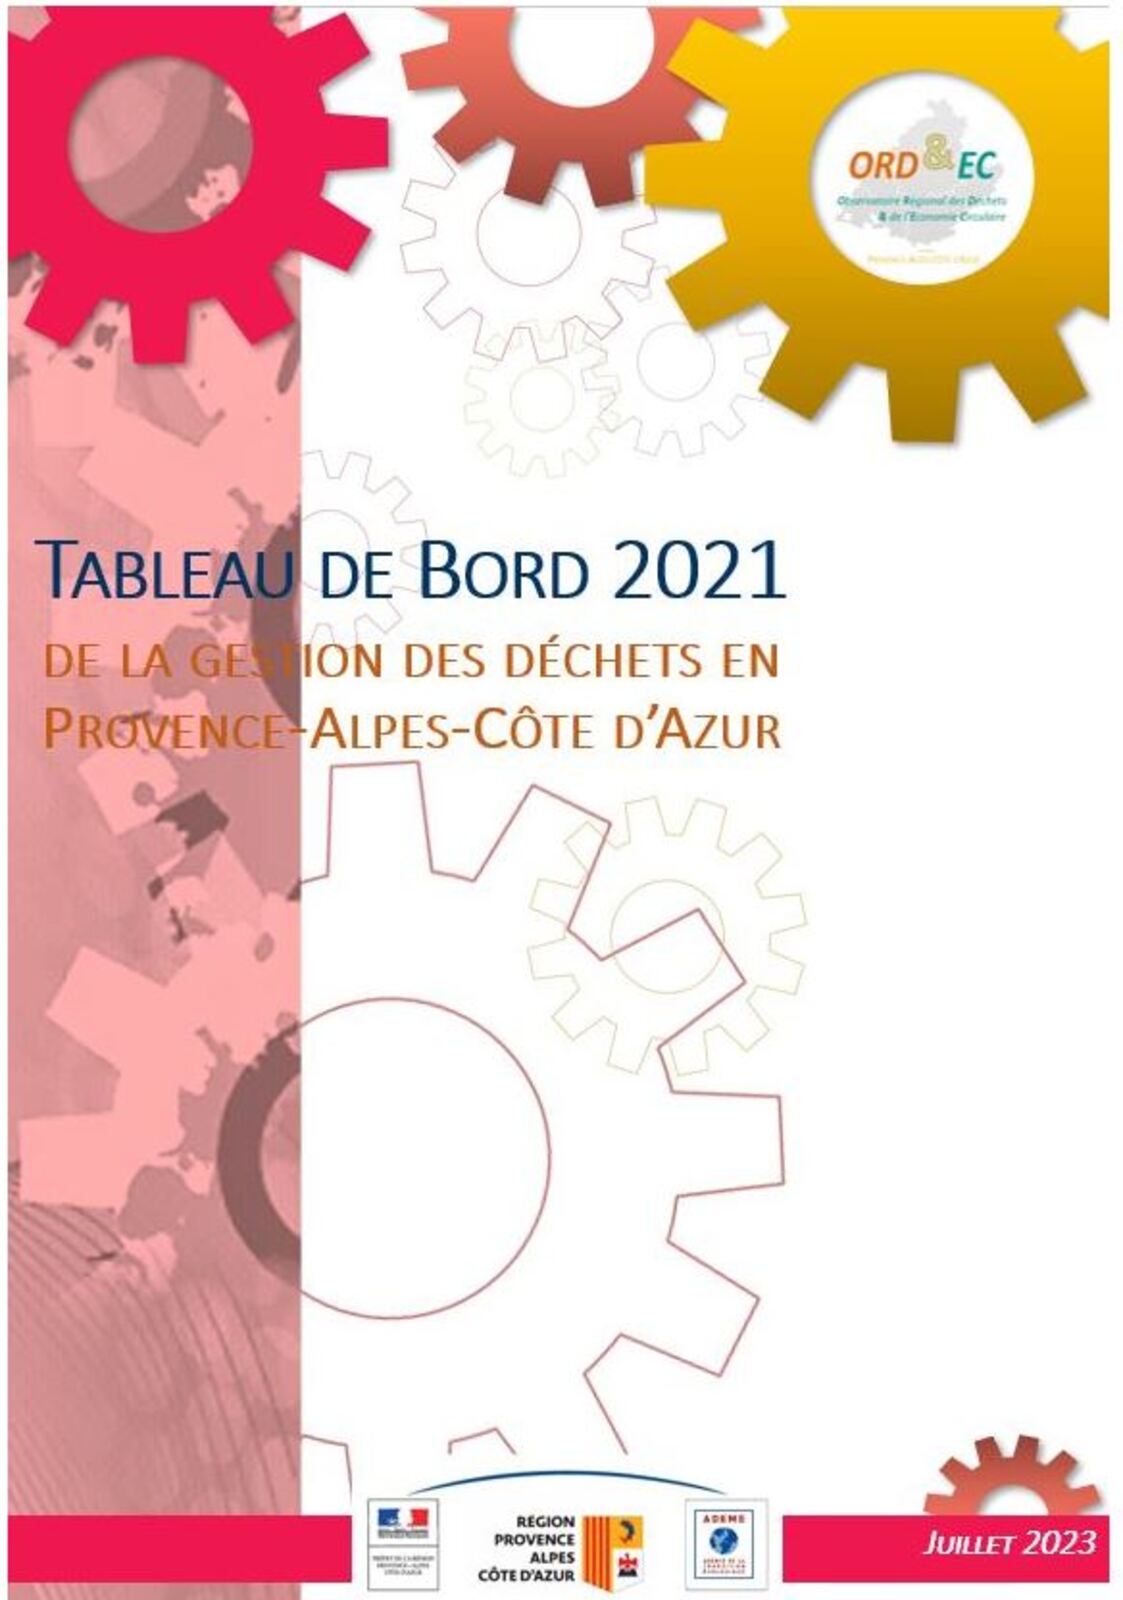 ORD&EC - Le tableau de bord de la gestion des déchets et de l'économie circulaire 2023 (données 2021) en Provence-Alpes-Côte d’Azur est disponible !